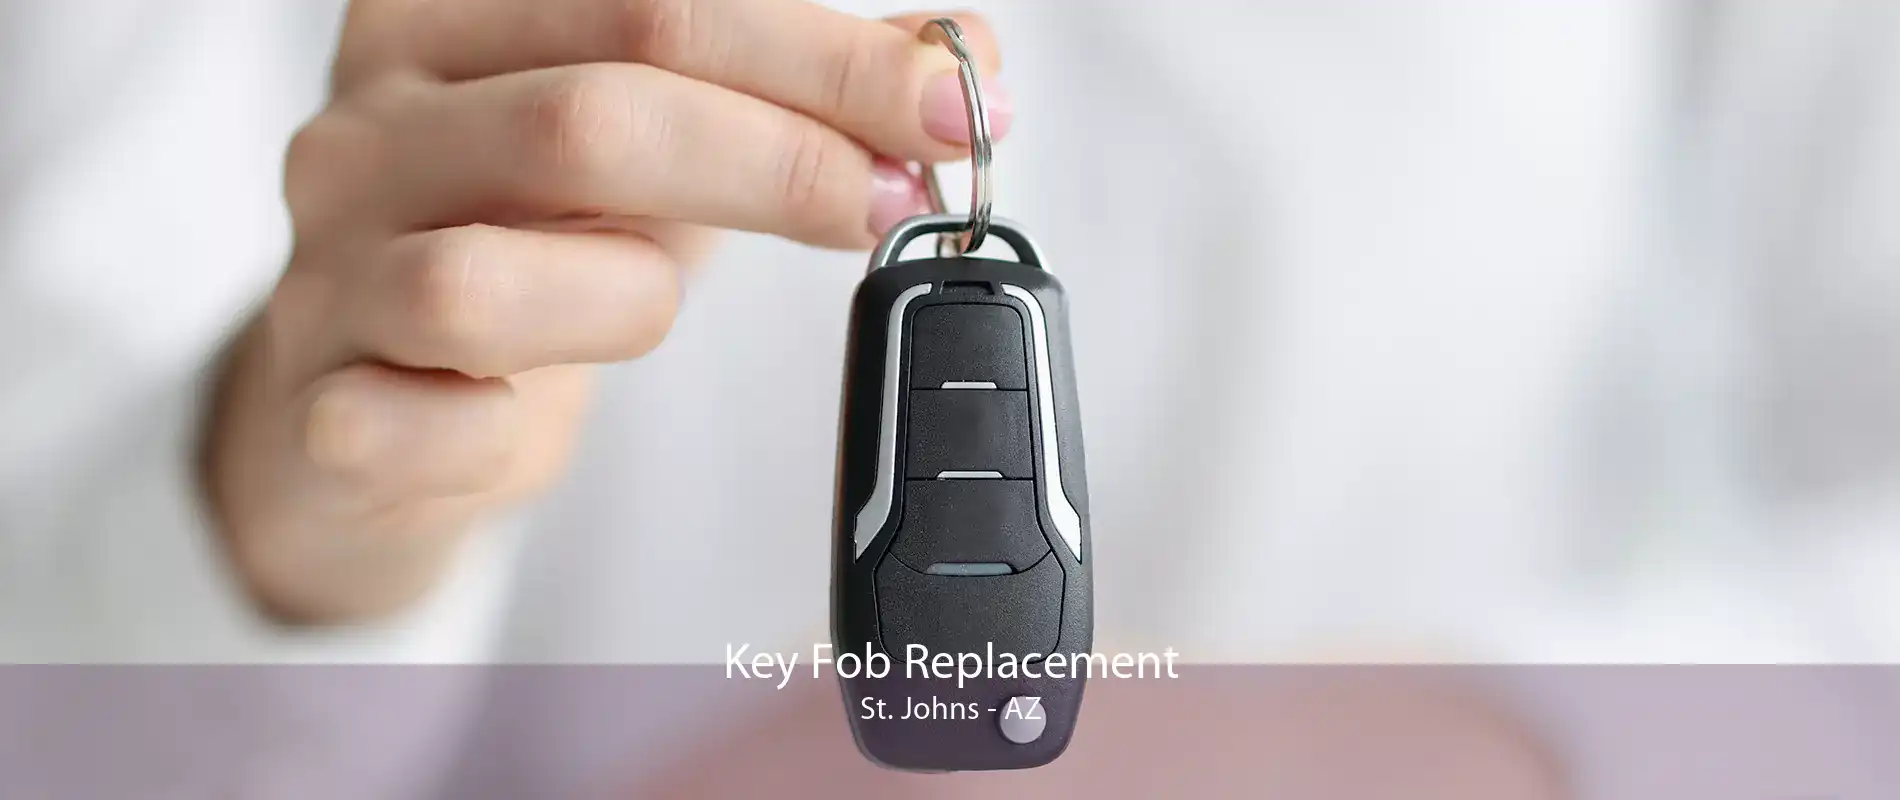 Key Fob Replacement St. Johns - AZ